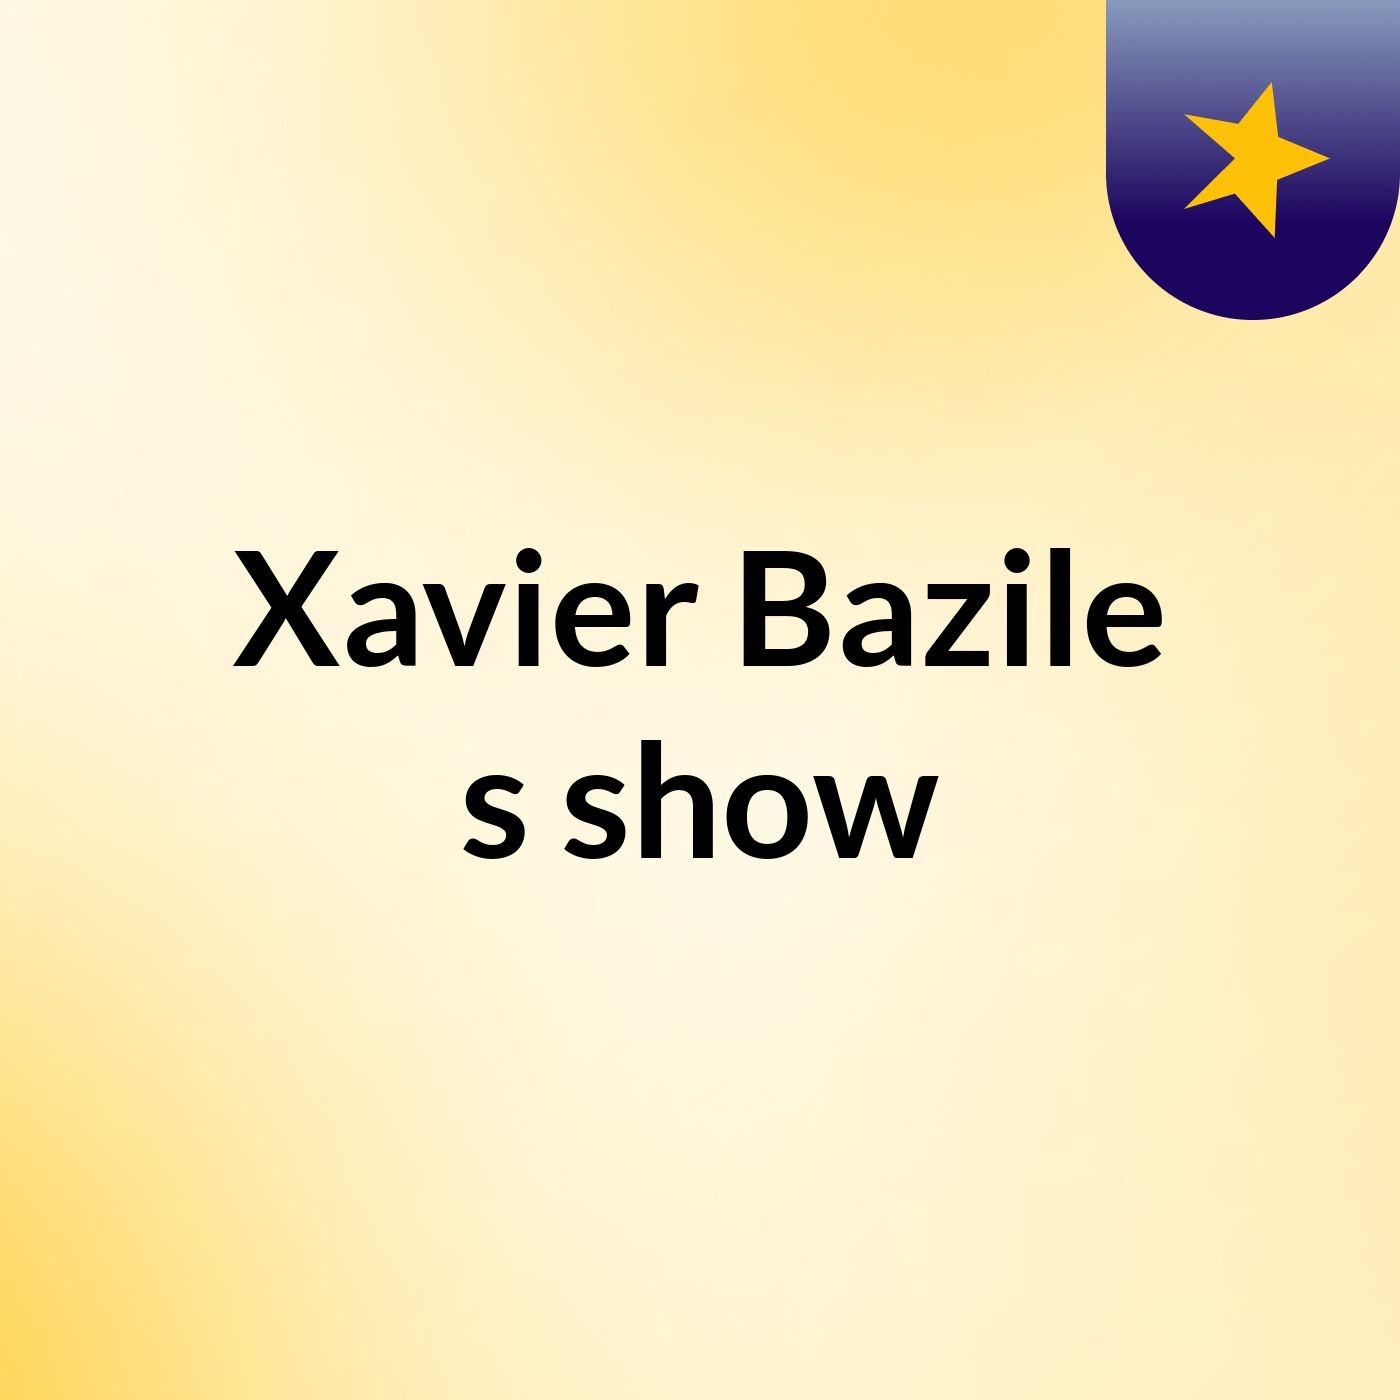 Episode 5 - Xavier Bazile's show